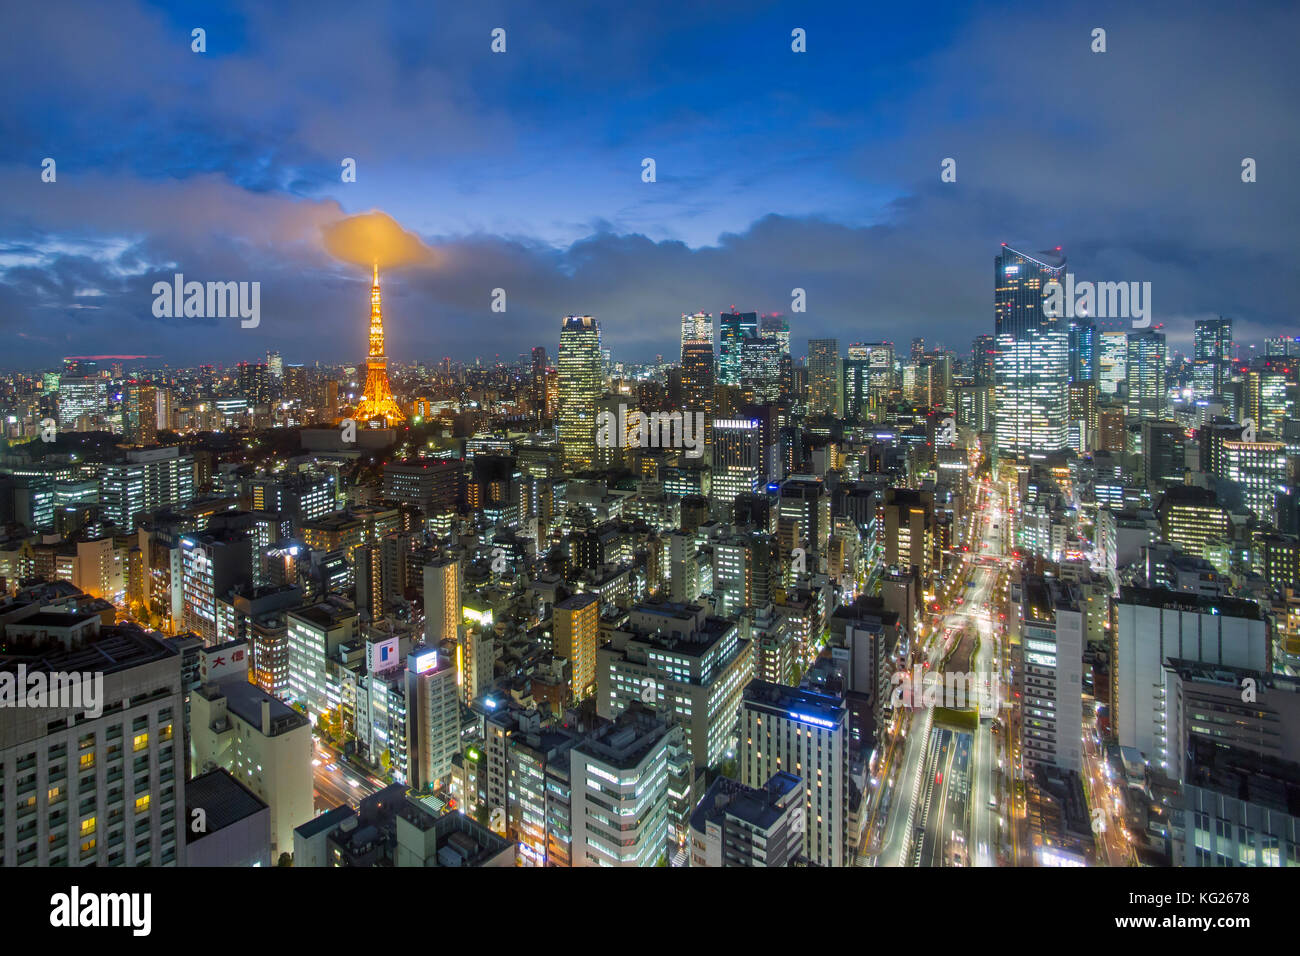 Vista notturna sopraelevata dello skyline della città e dell'iconica Tokyo Tower illuminata, Tokyo, Giappone, Asia Foto Stock